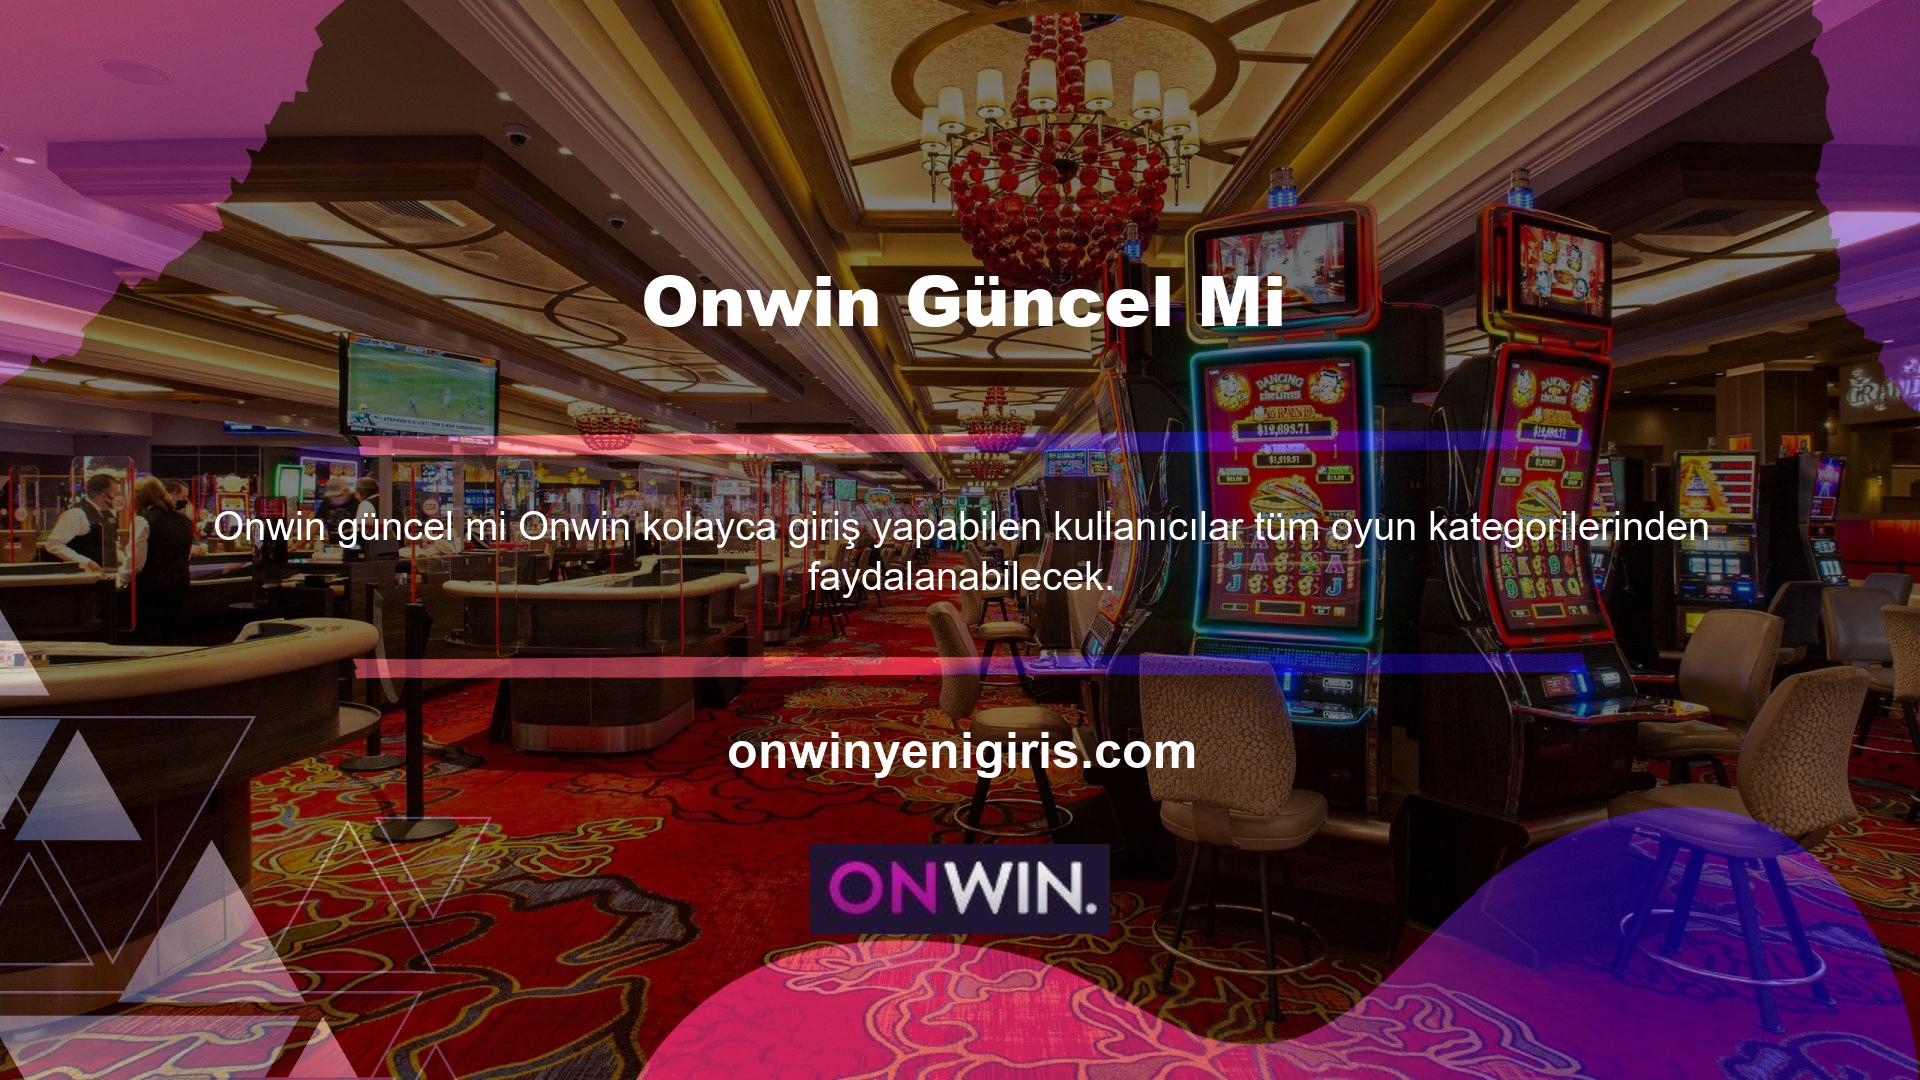 Onwin Oyunlar menüsünde yer alan oyun türleri Spor Bahisleri, Canlı Bahisler, Casino, Canlı Casinolar, 3D Slotlar ve TV Oyunları olarak sıralanmıştır